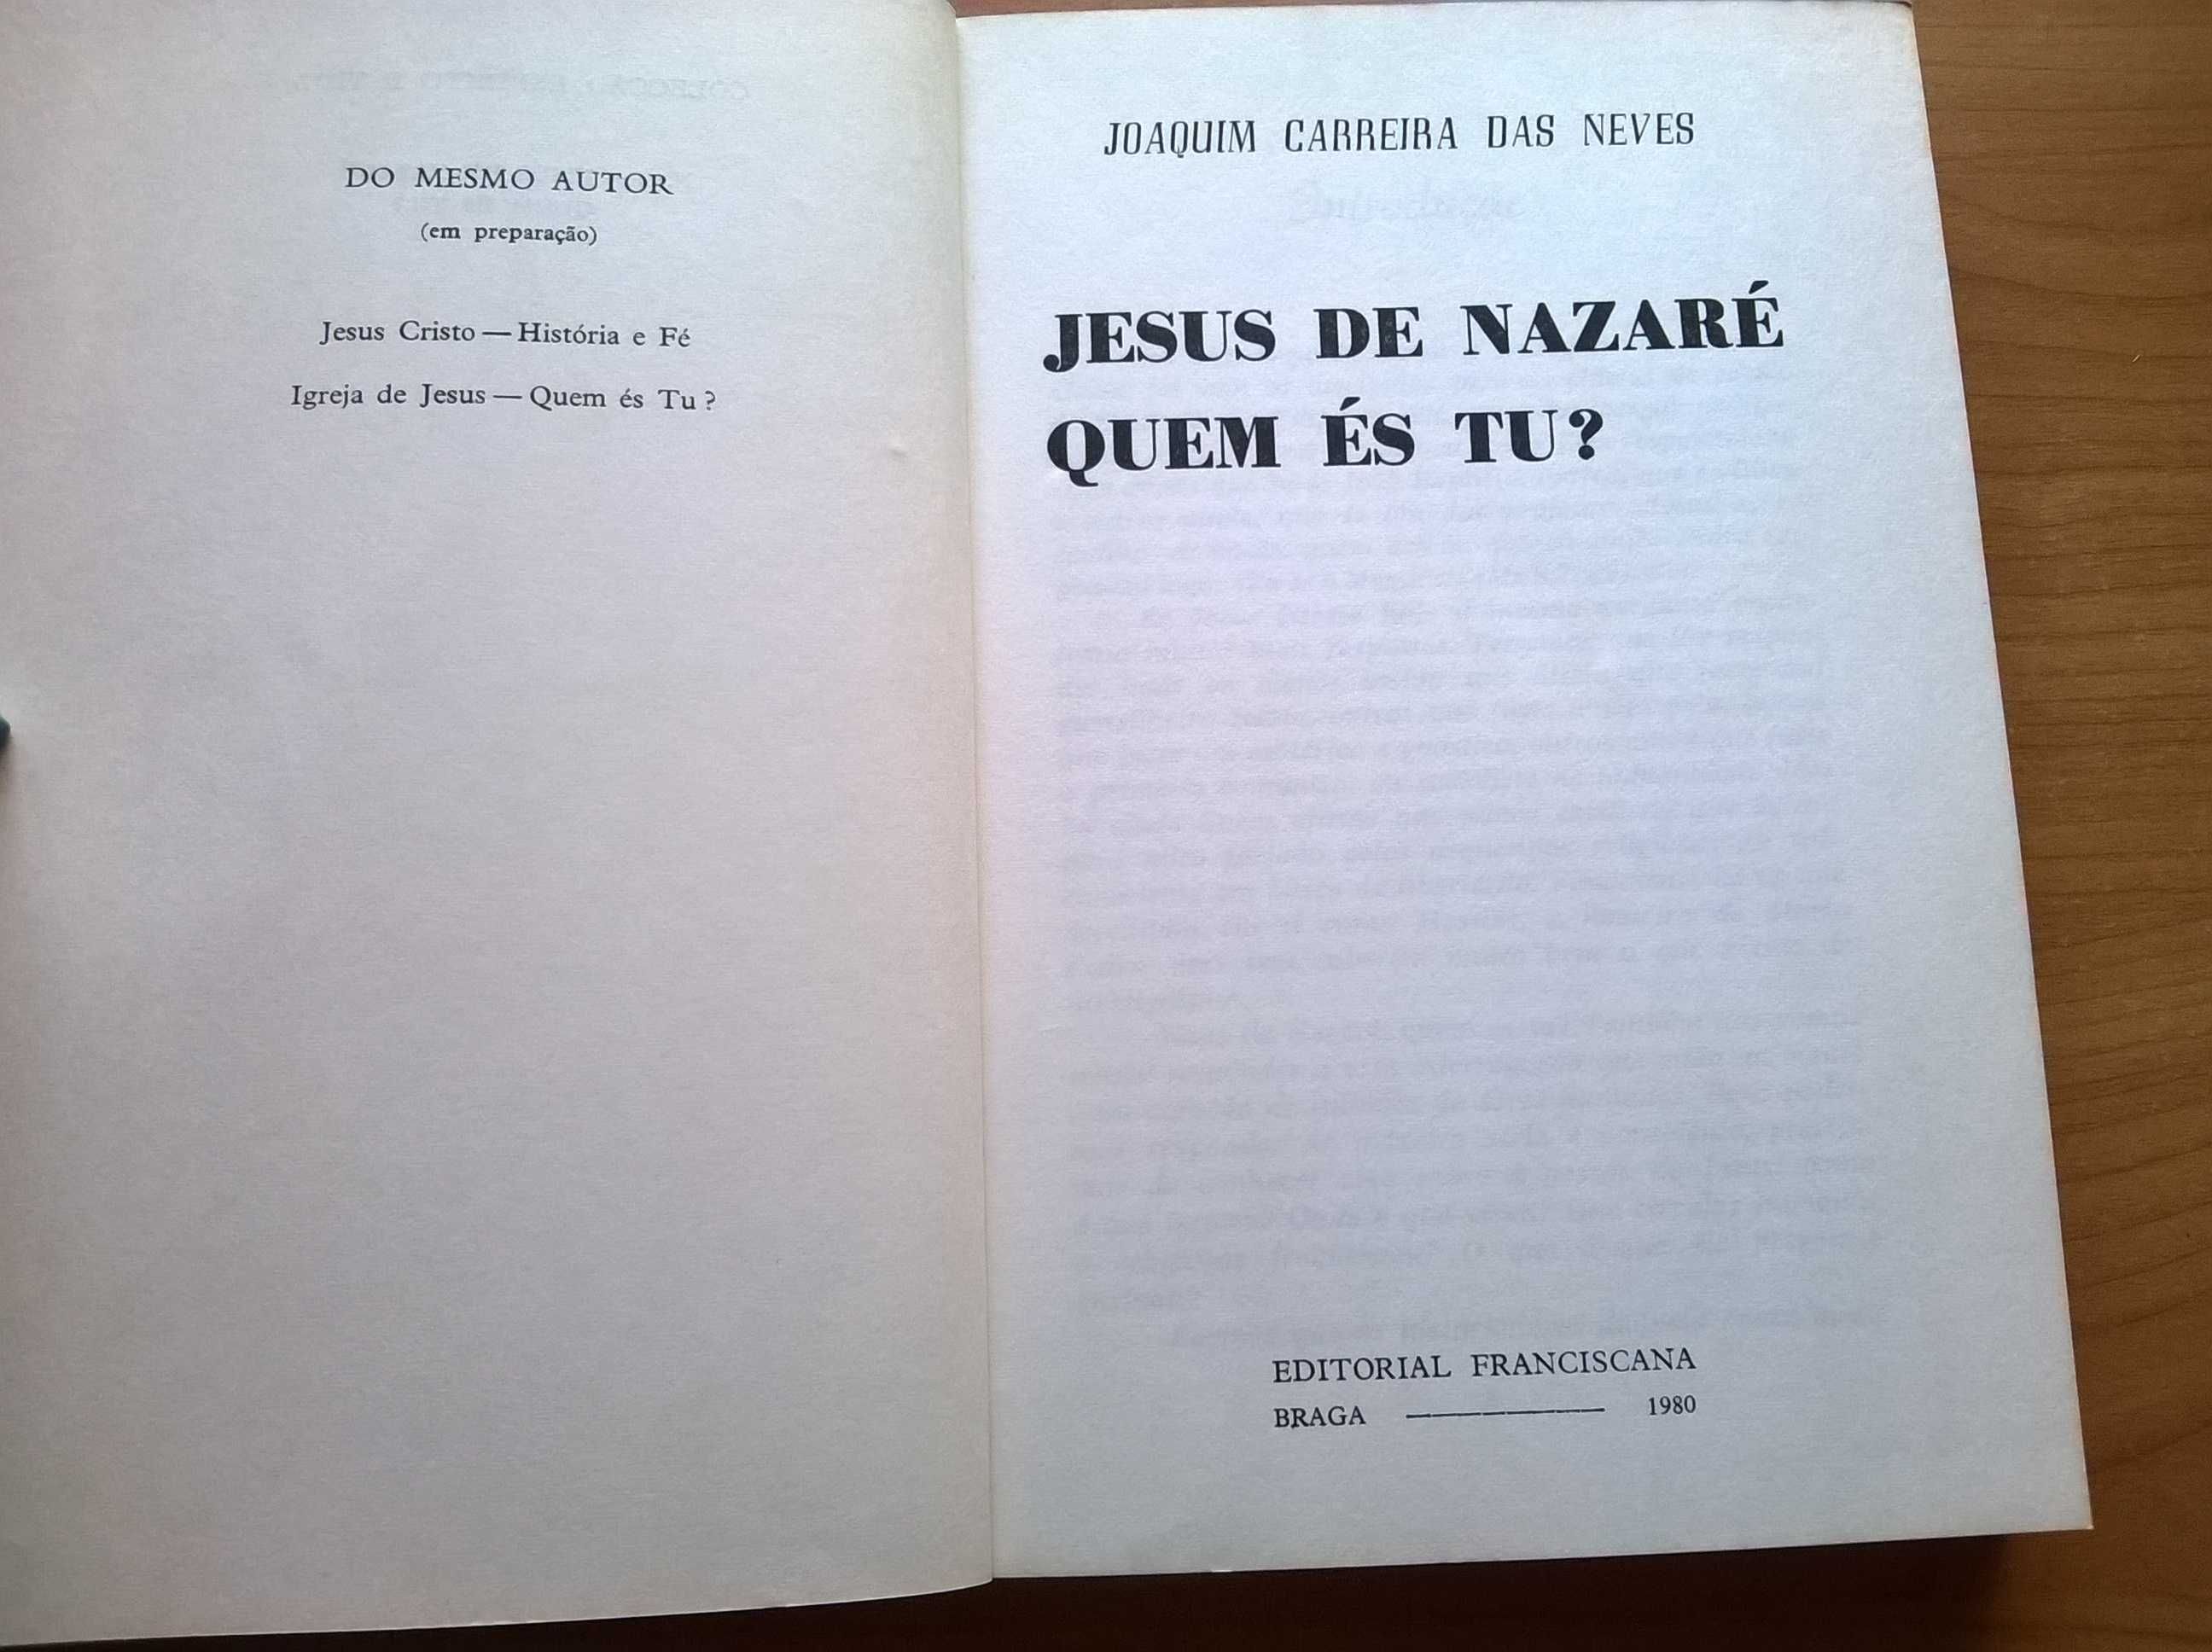 Jesus de Nazaré quem és Tu? - Joaquim Carreira das Neves